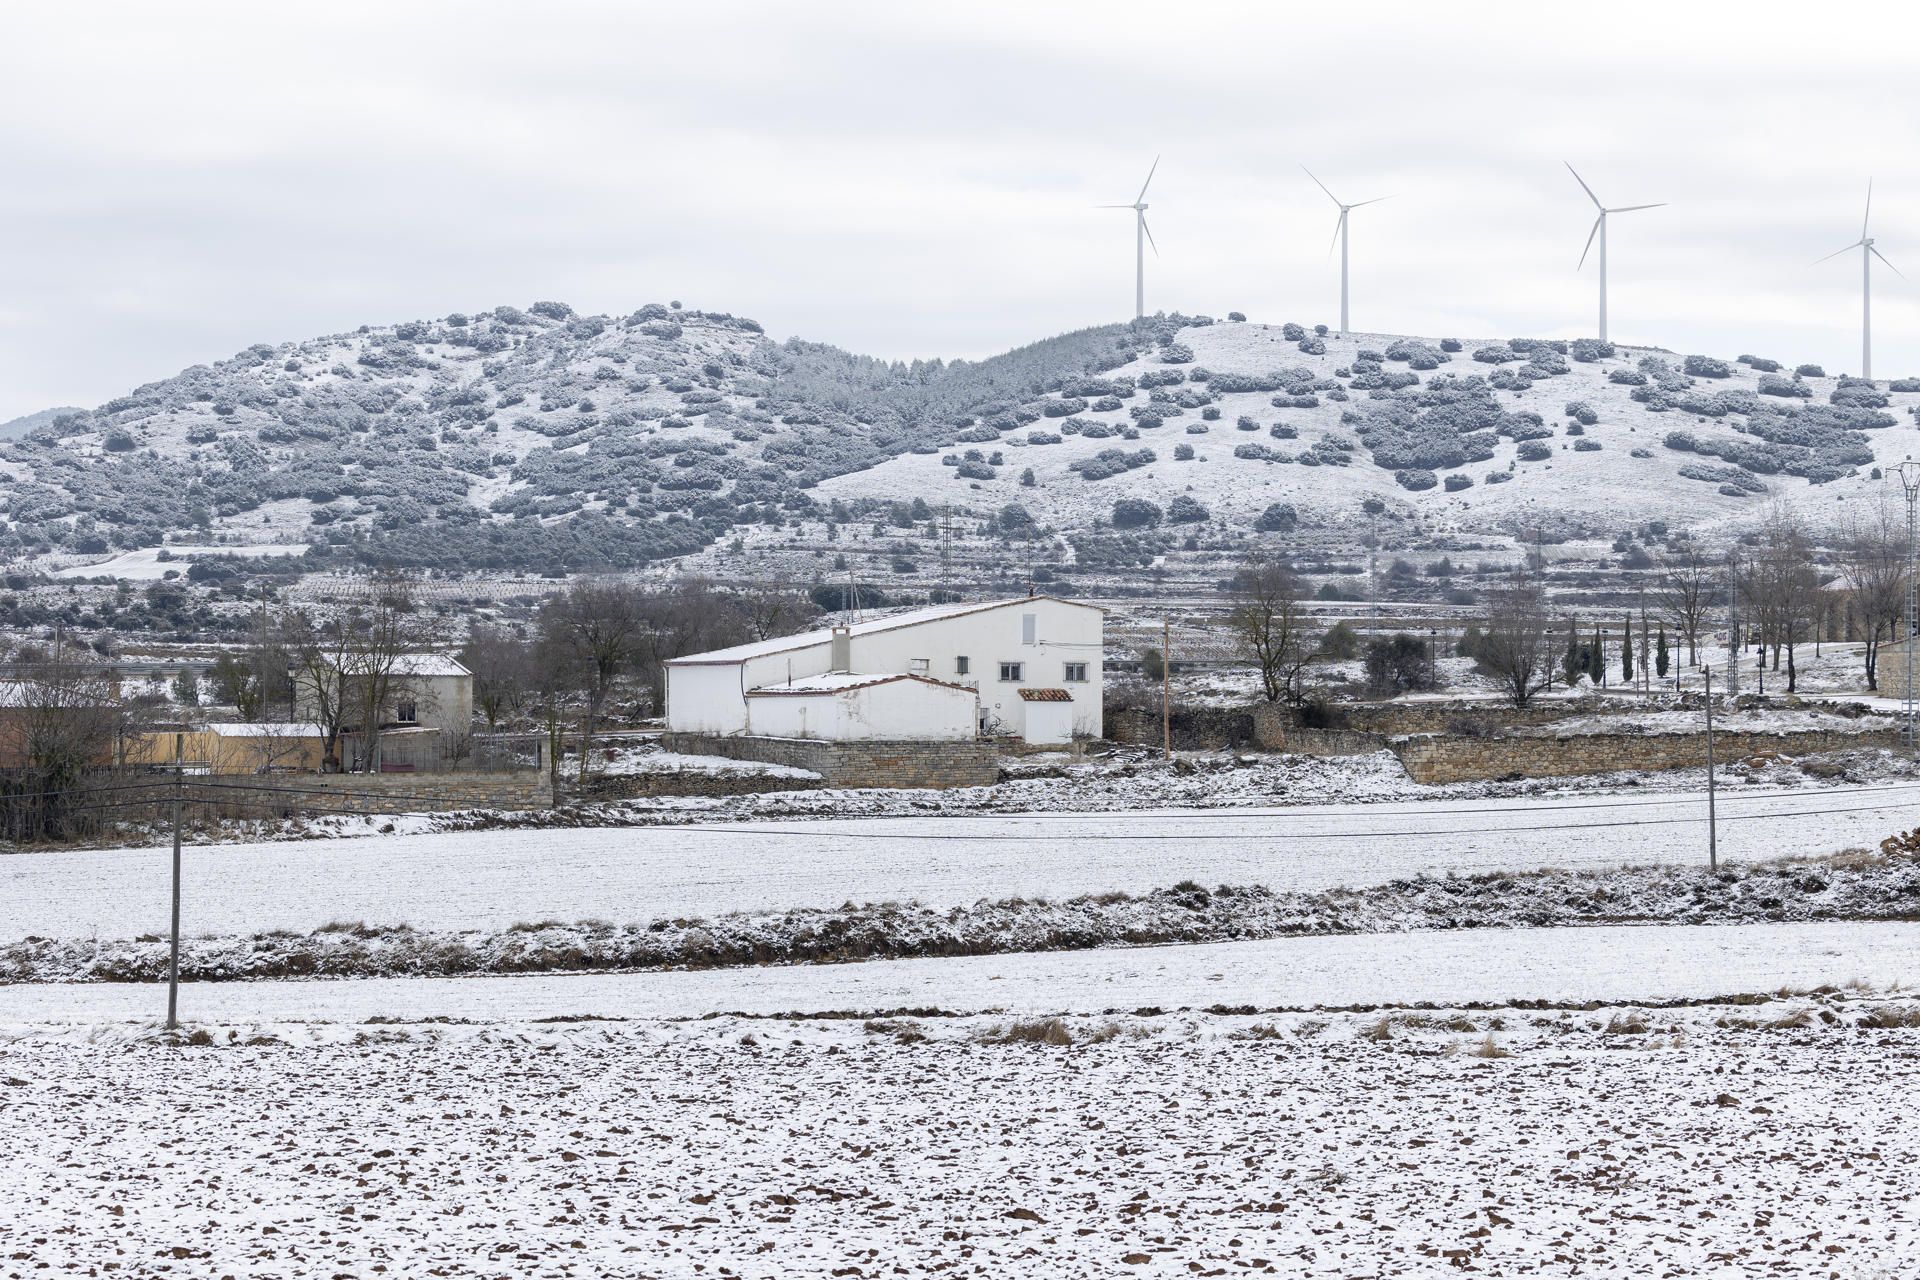 Nieve en Castellón: Una localidad del Alto Palancia cubierta por un manto blanco